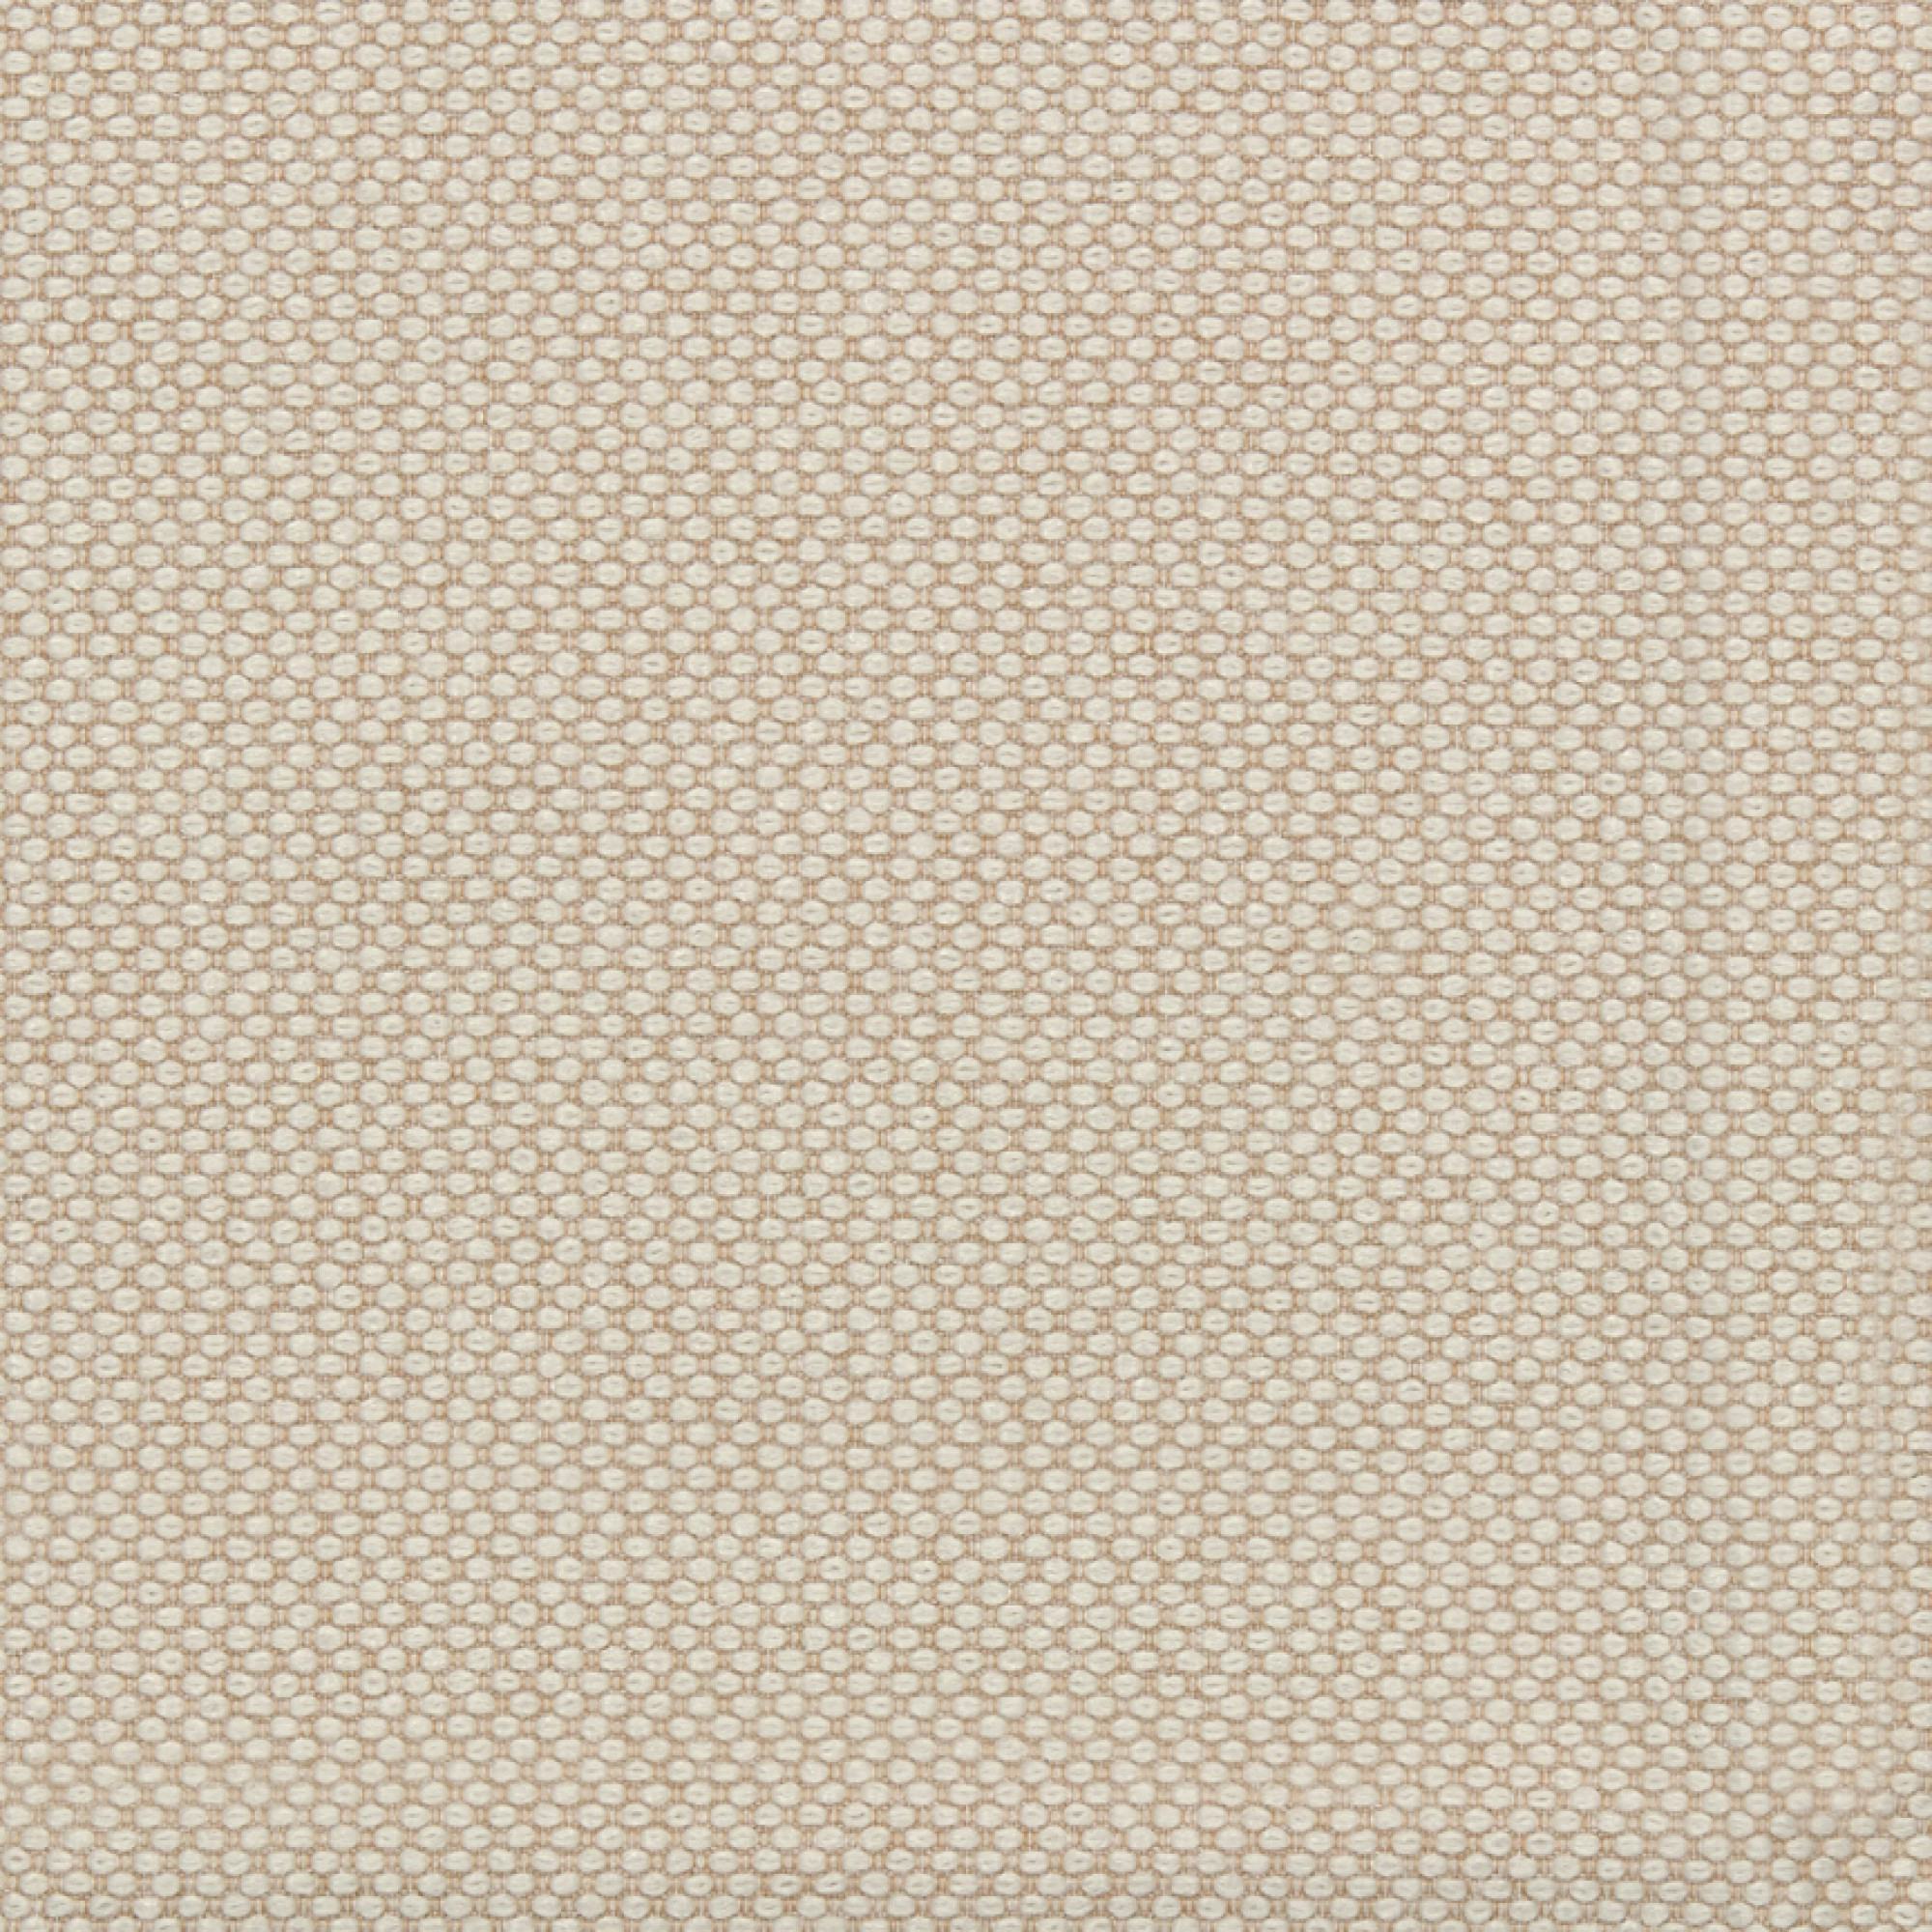 Fabric sample Merit 0030 brown